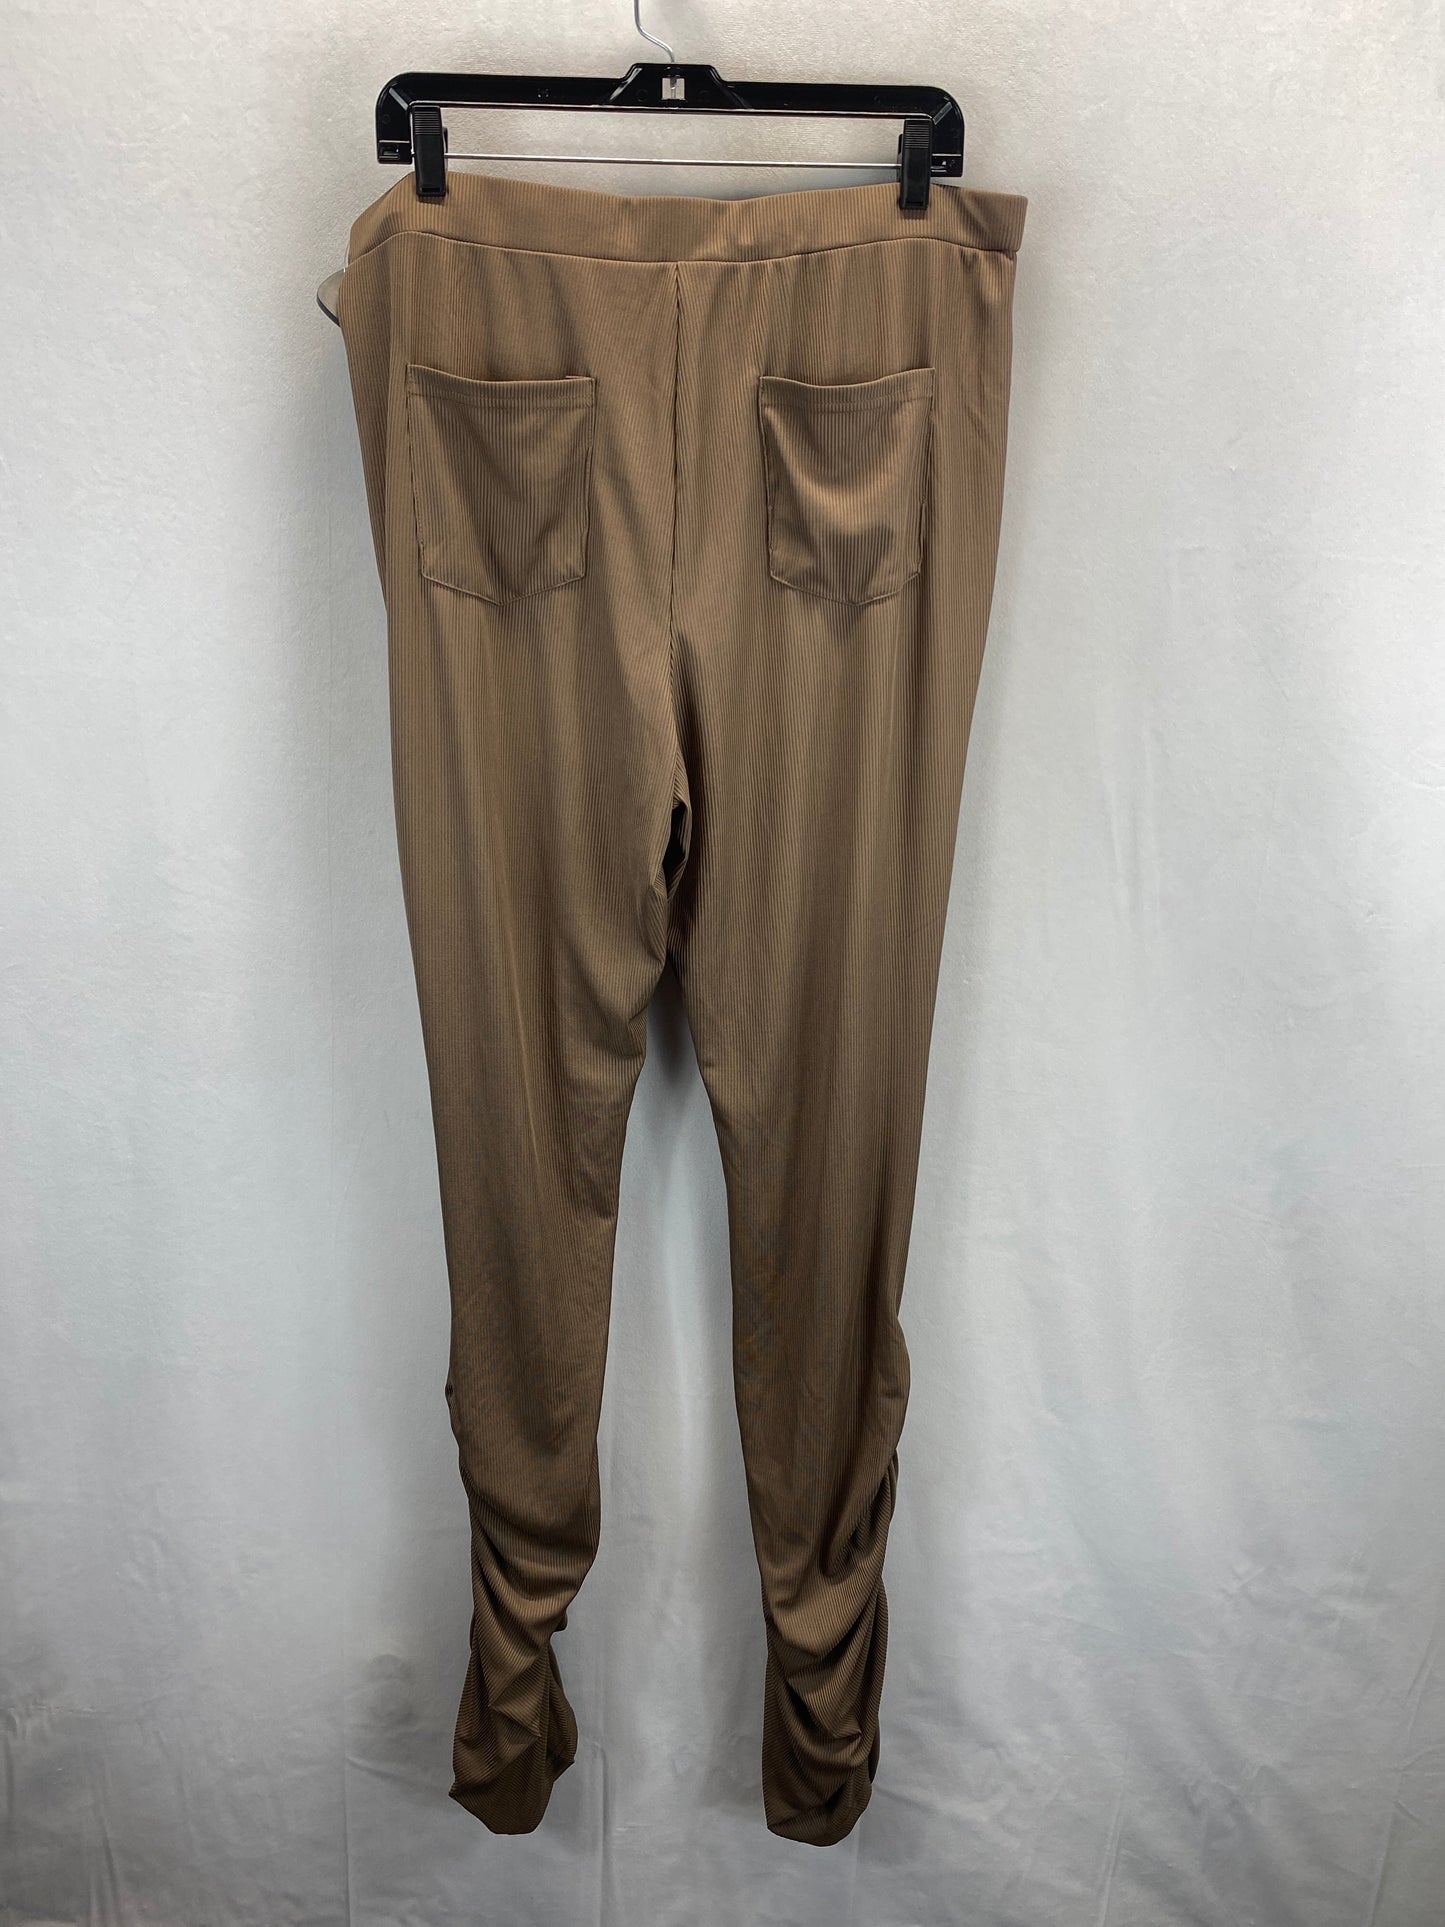 Brown Pants Lounge Shein, Size 3x